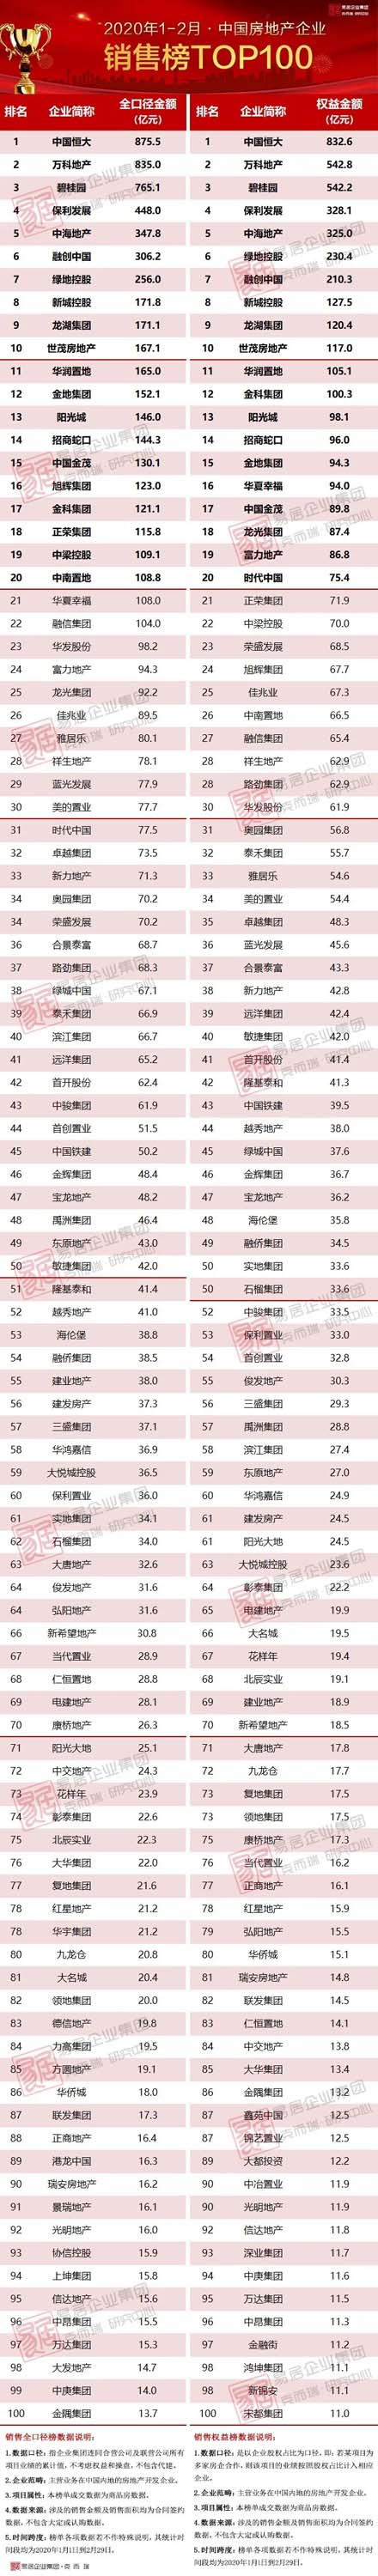 1-2月中国房地产企业销售TOP100